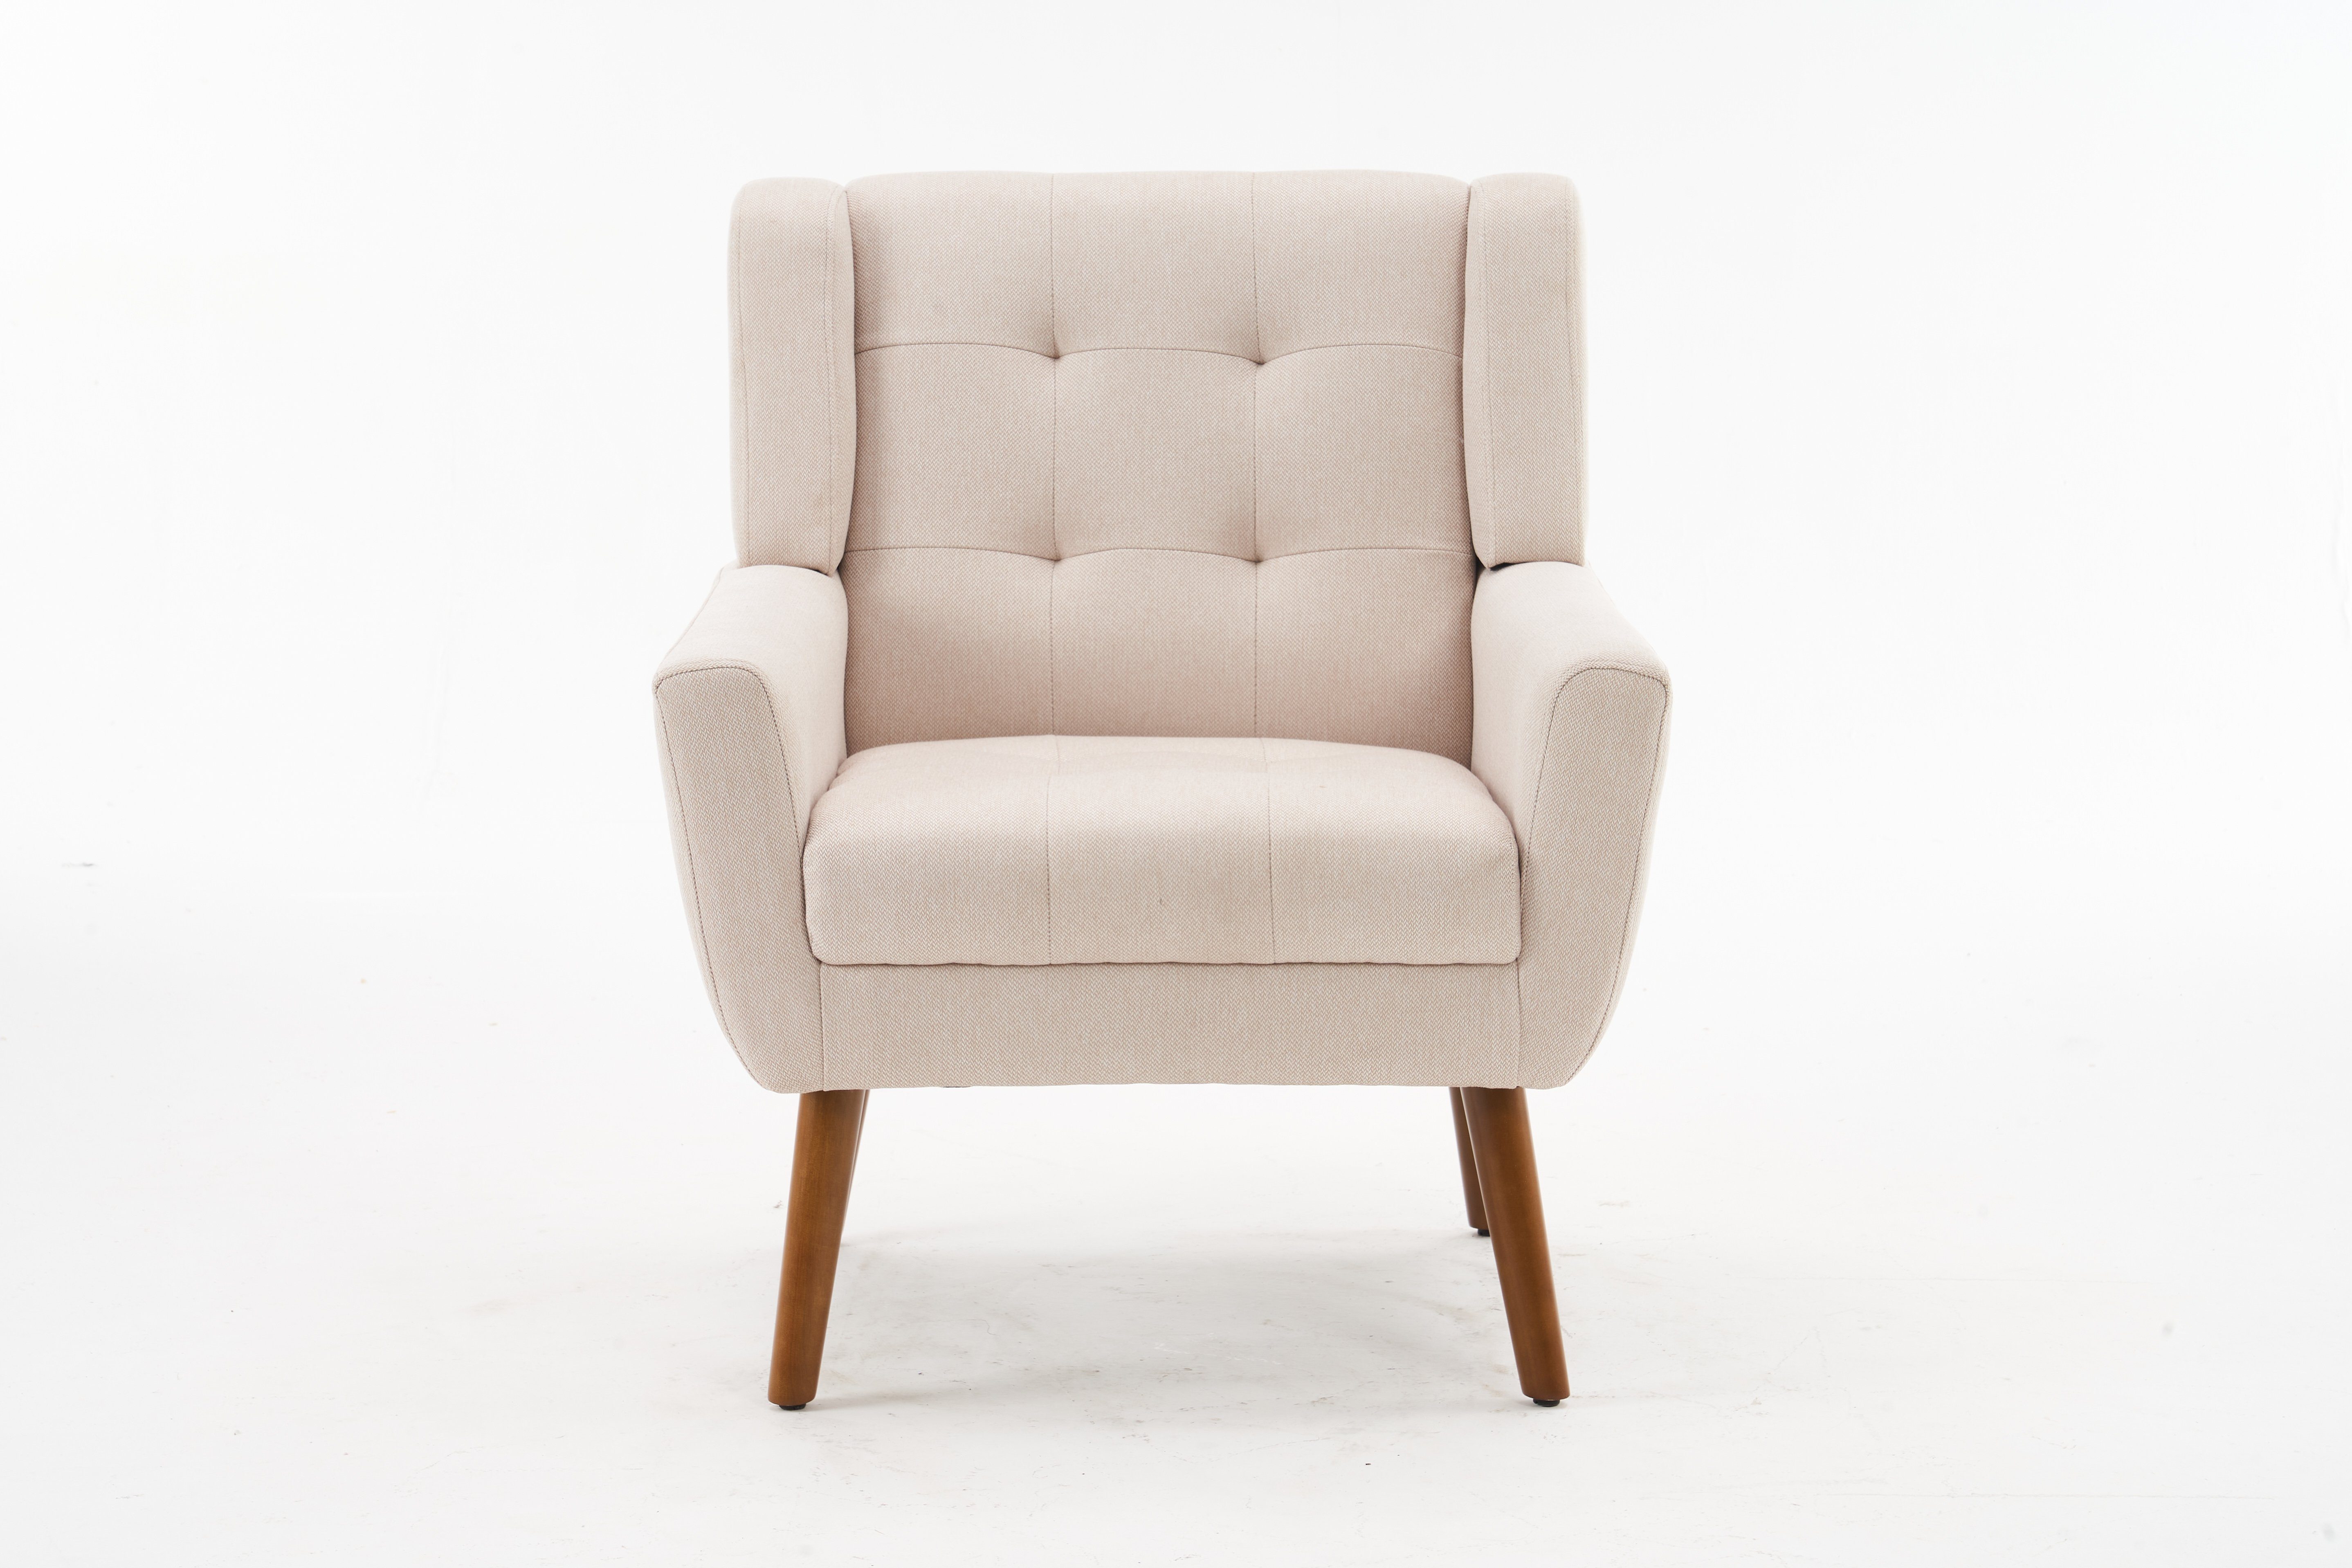 DOTMALL Armlehnstuhl Mid Century Modern Fabric Armlehnstuhl, Beige und Nussbaum